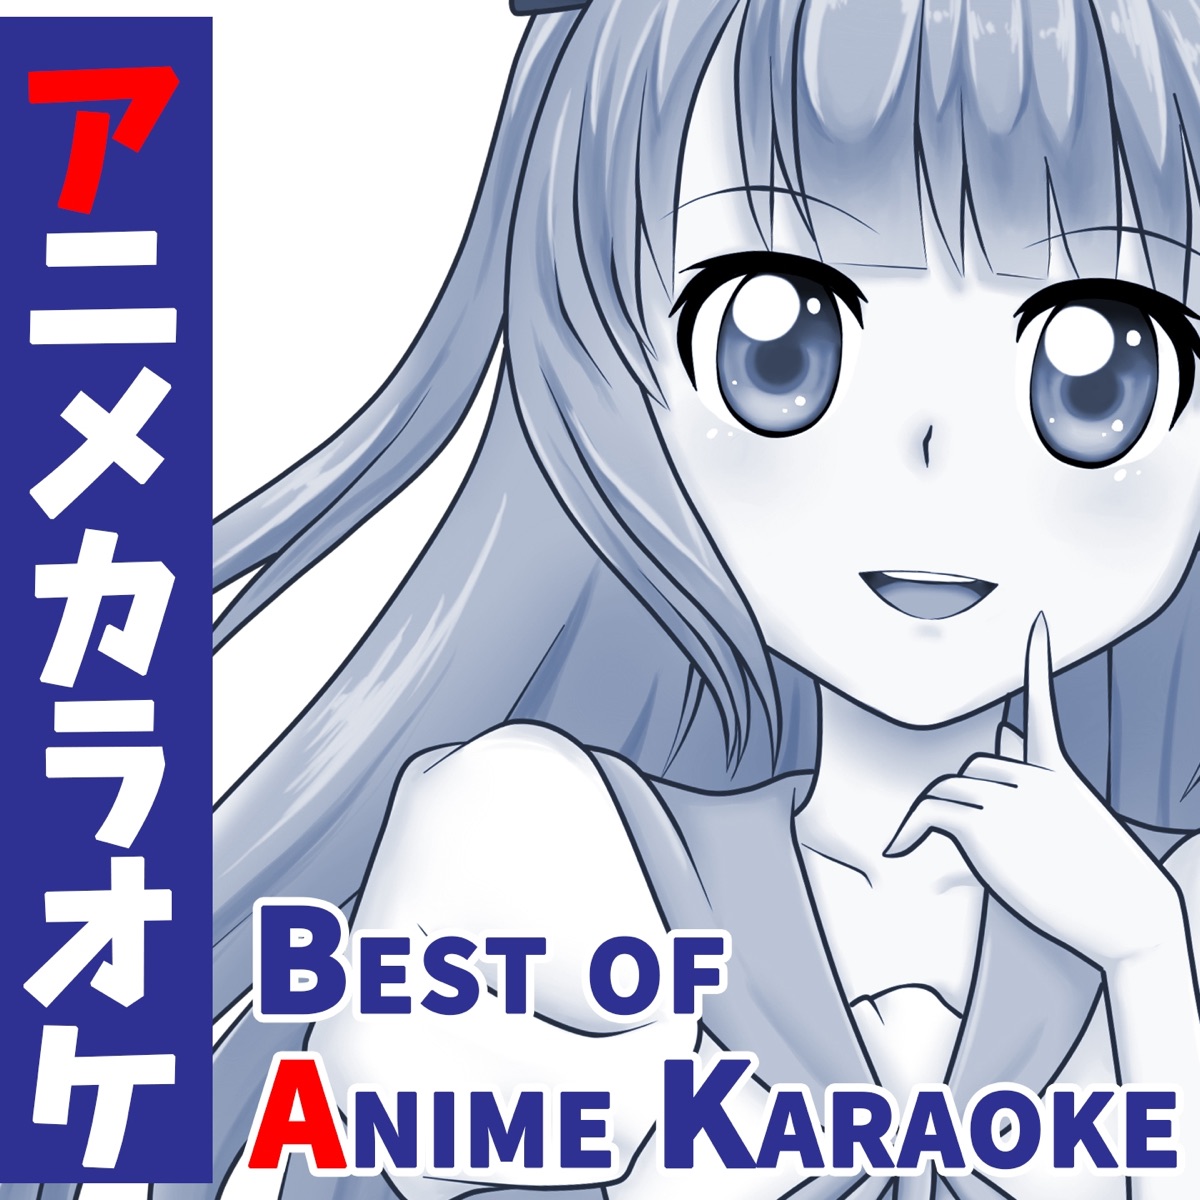 Karaoke! Kagami and Tsukasa | Lucky star, Anime, Star images